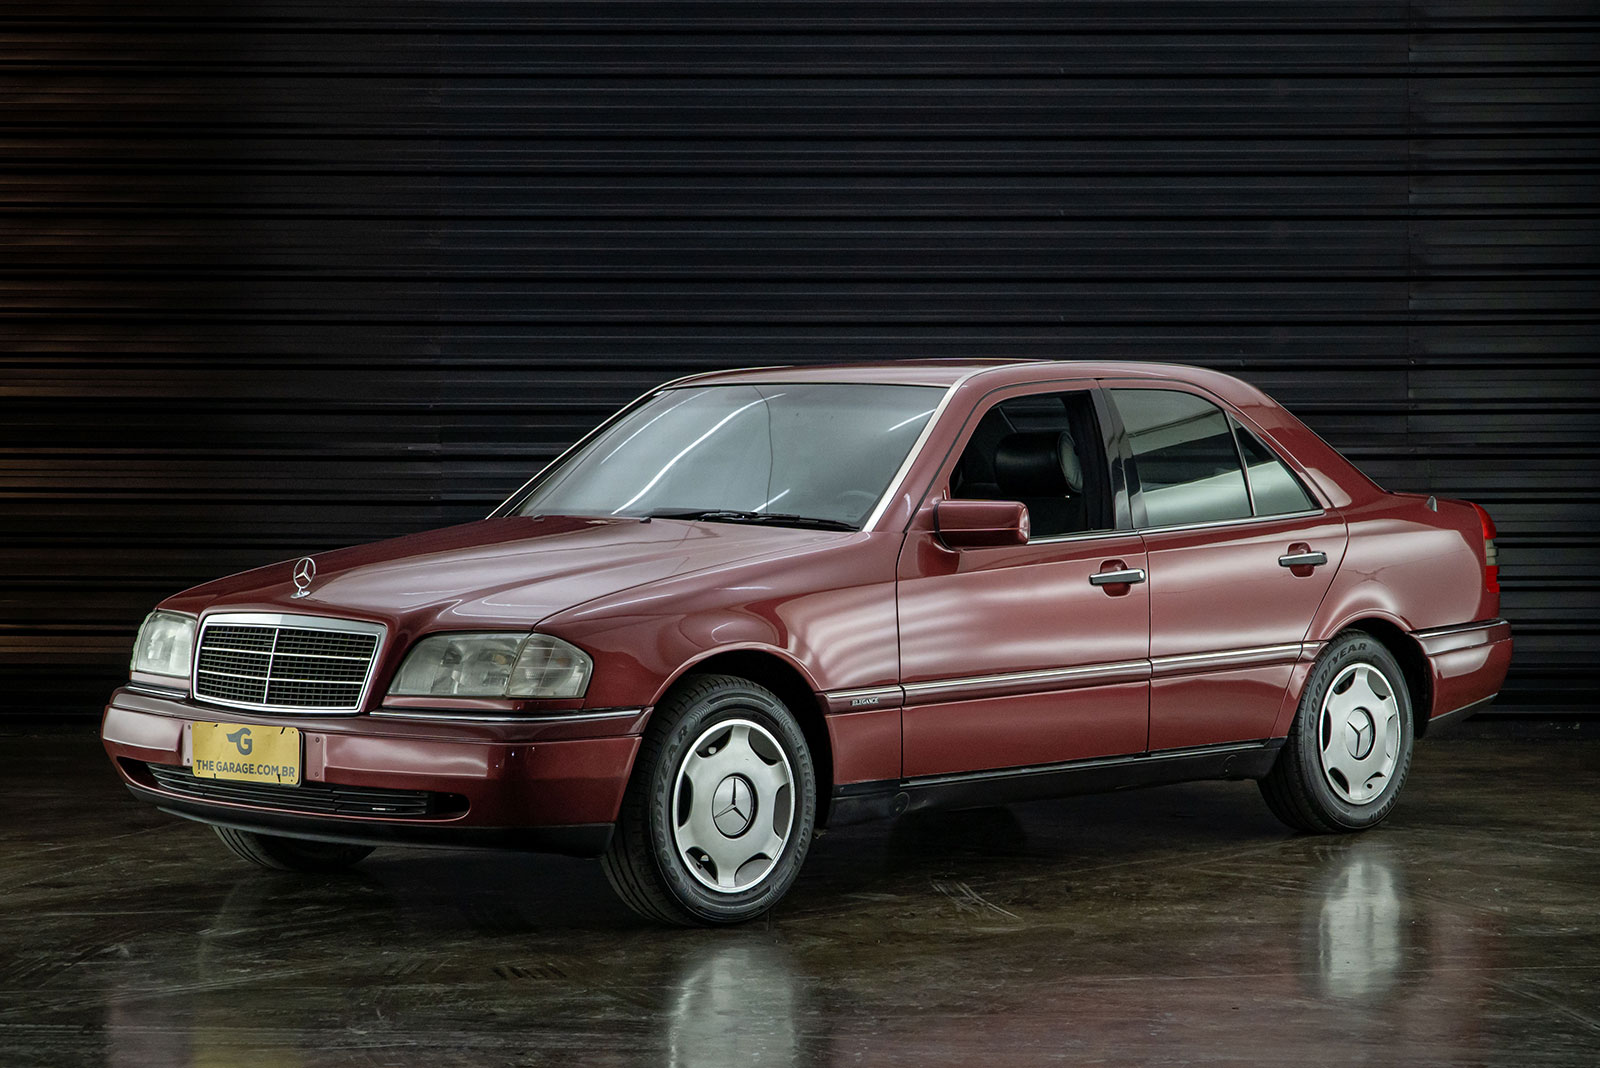 1993-mercedes-benz-c220-elegance-a-venda-sao-paulo-for-sale-classicos-a-melhor-loja-de-carros-antigos-acervo-de-carros